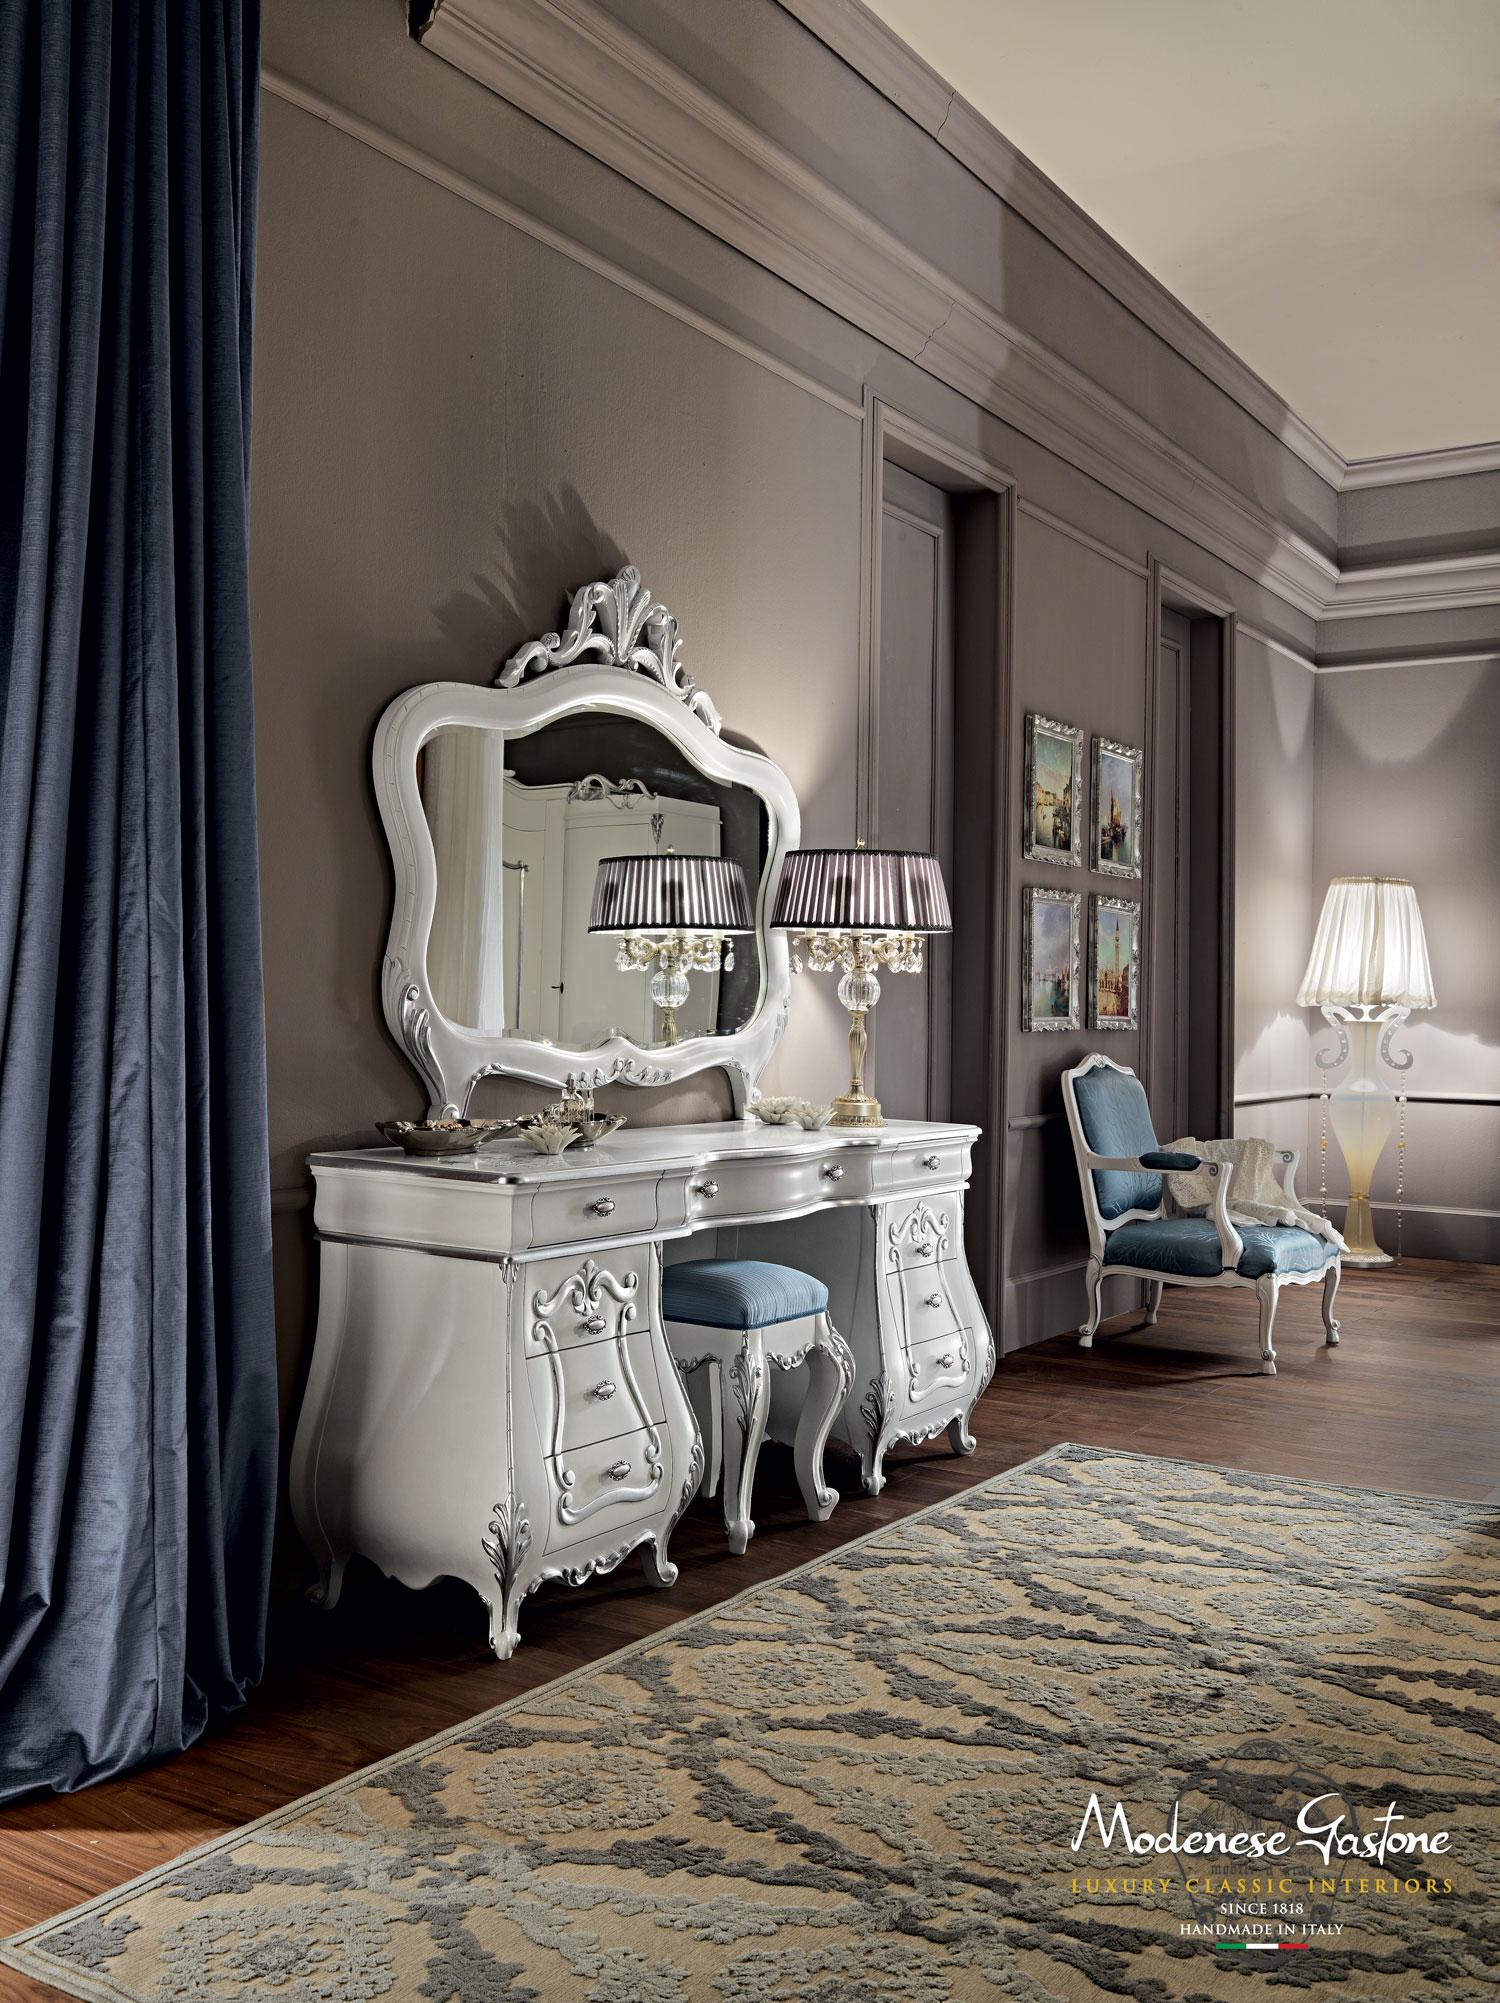 Table de maquillage baroque sur mesure par Modenese Gastone Interiors, producteur italien de meubles. L'élégance unique de ce meuble sous-vasque à neuf tiroirs est remarquable lorsqu'on observe sa silhouette bombée, la finition laquée blanche et les